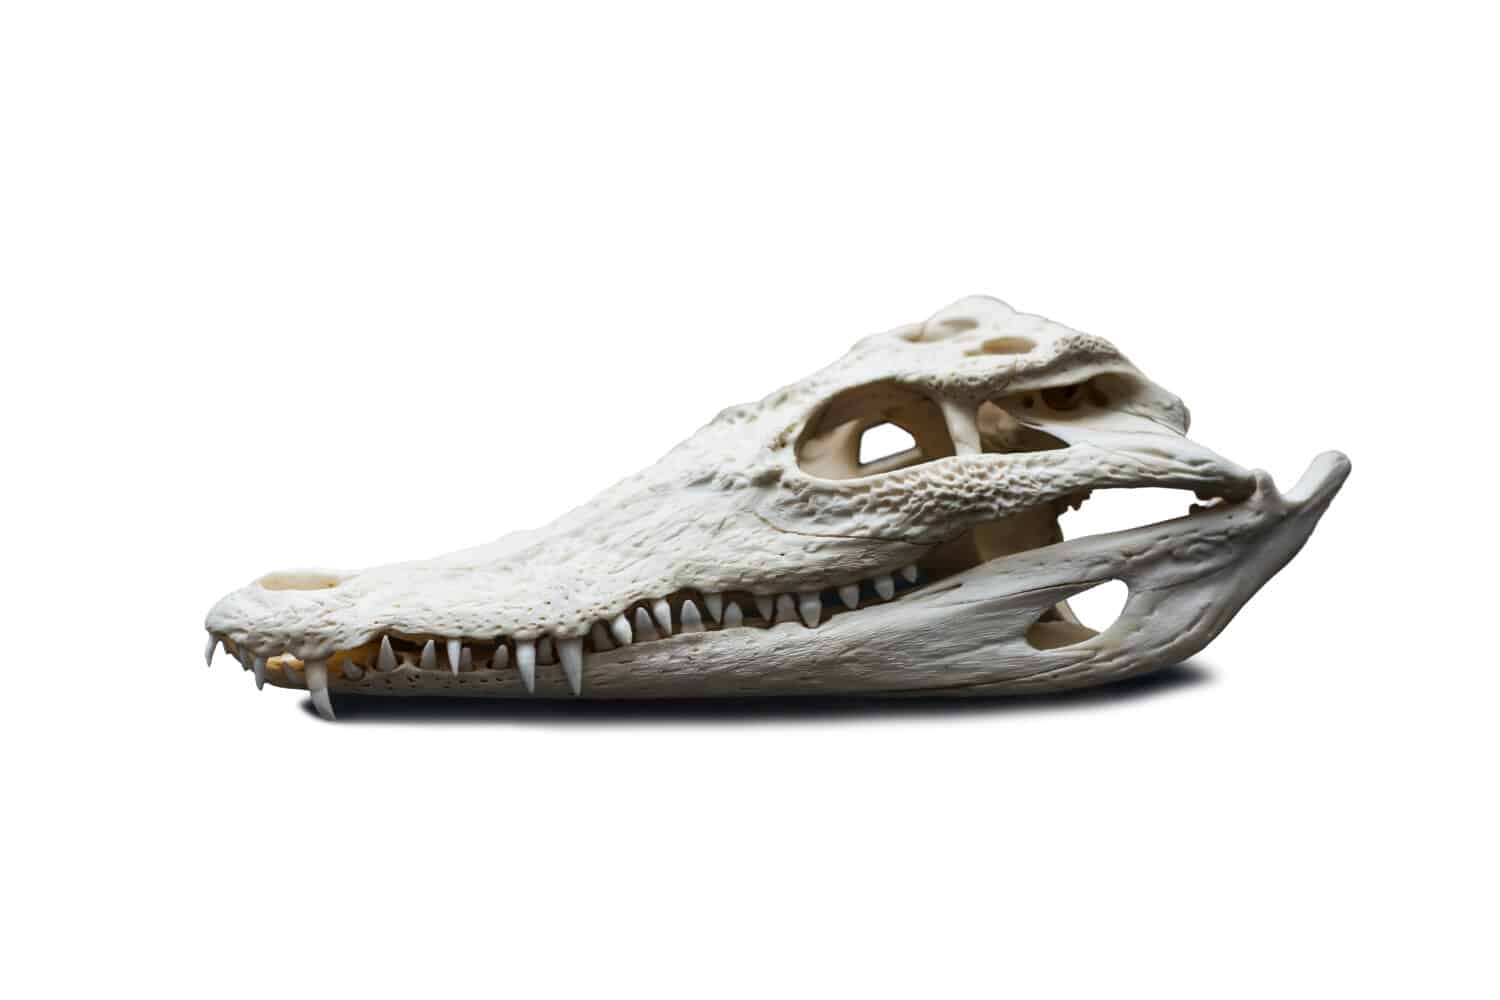 alligator skull isolated on white background stock photo